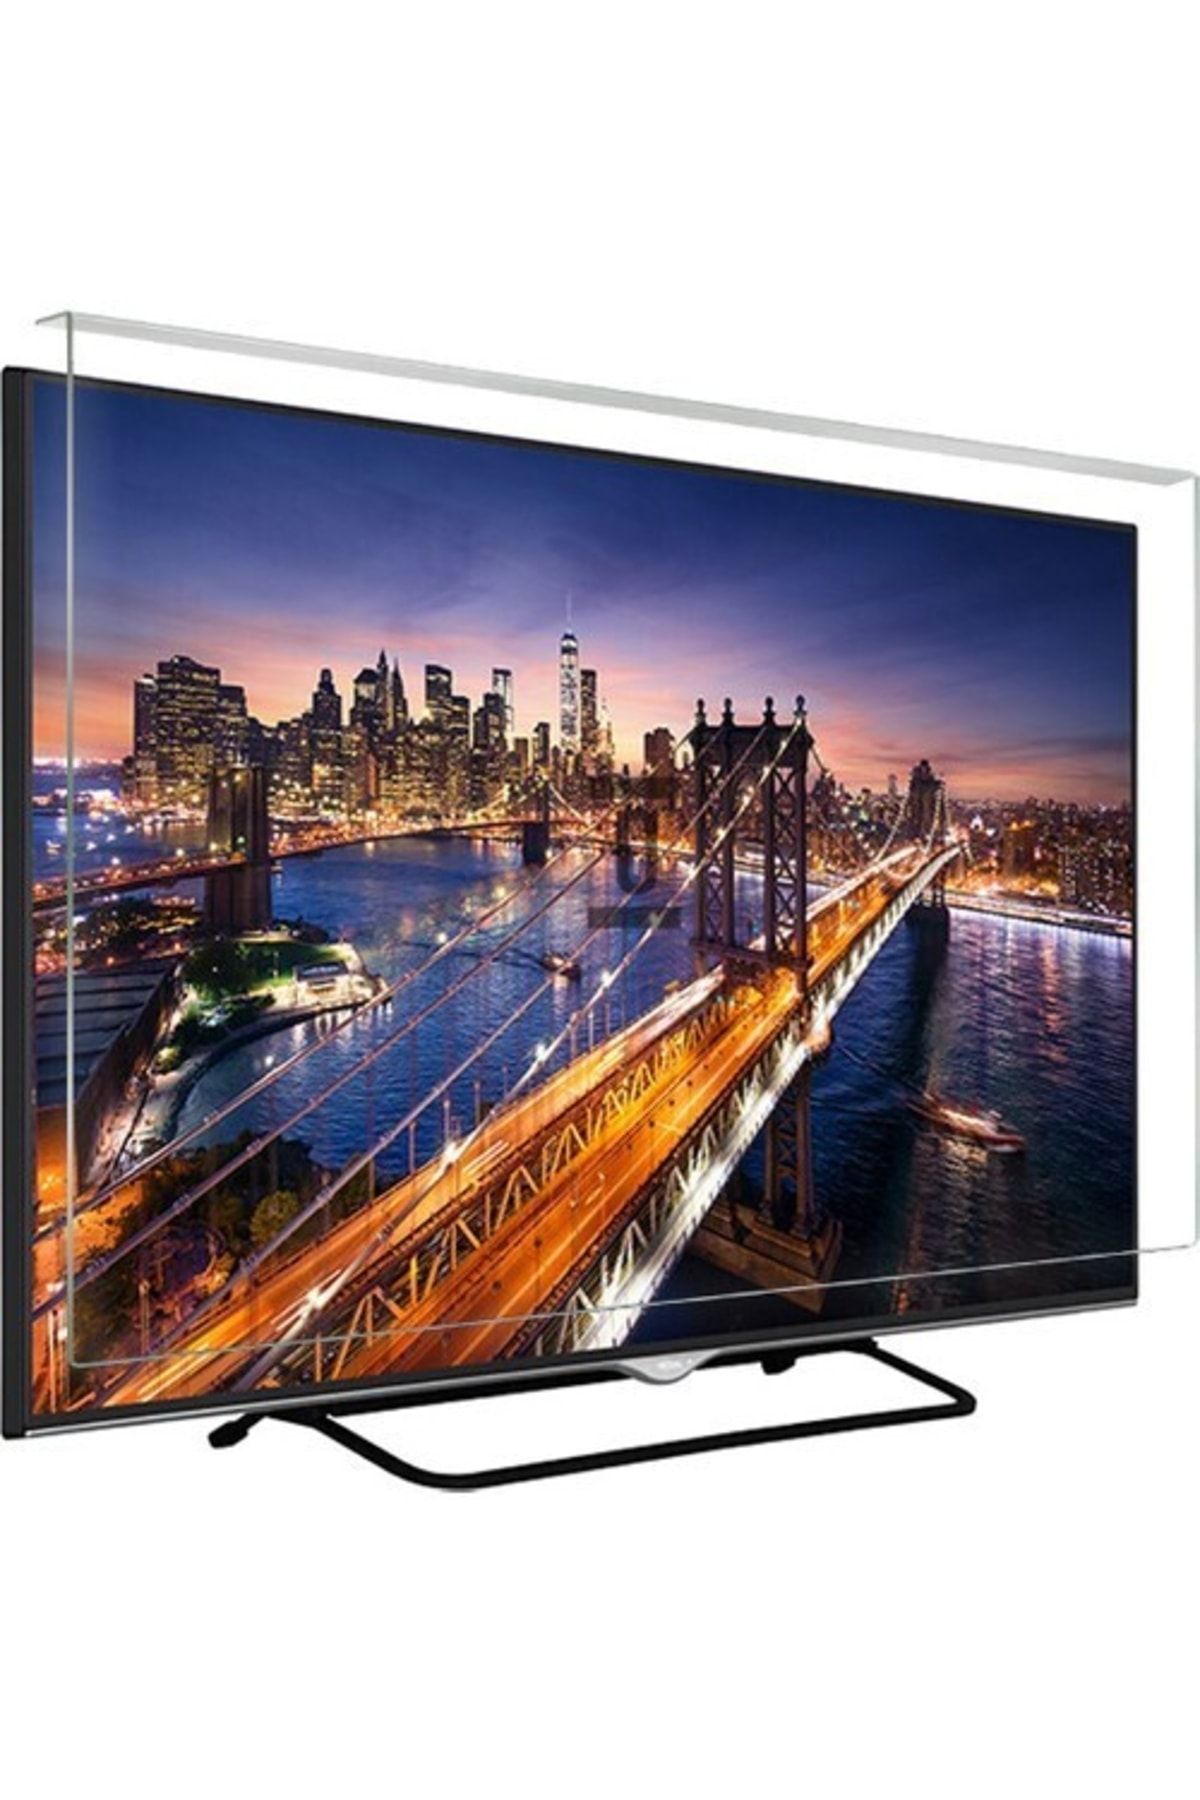 Telenova Asaf Online-evçelik 40fhd4001 Tv Ekran Koruyucu Düz (flat) Ekran